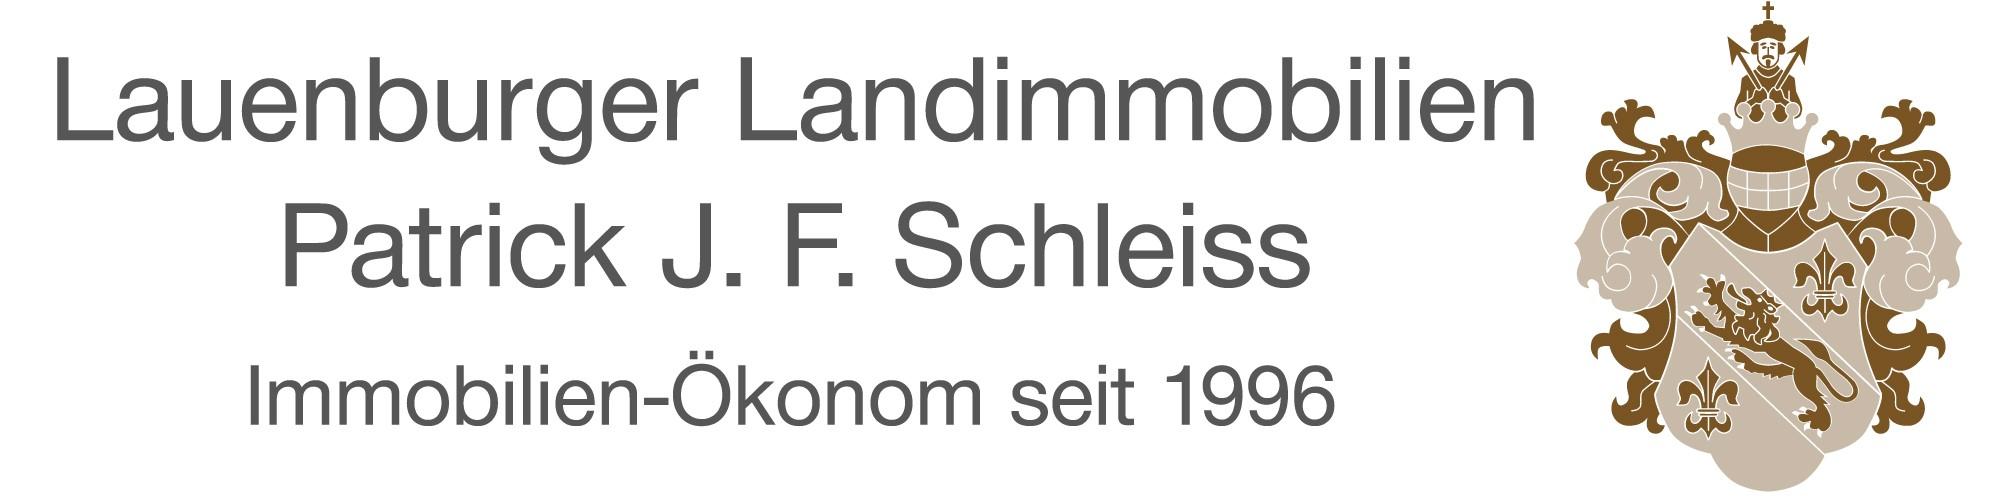 Logo Lauenburger Landimmobilien Patrick J.F.Schleiss